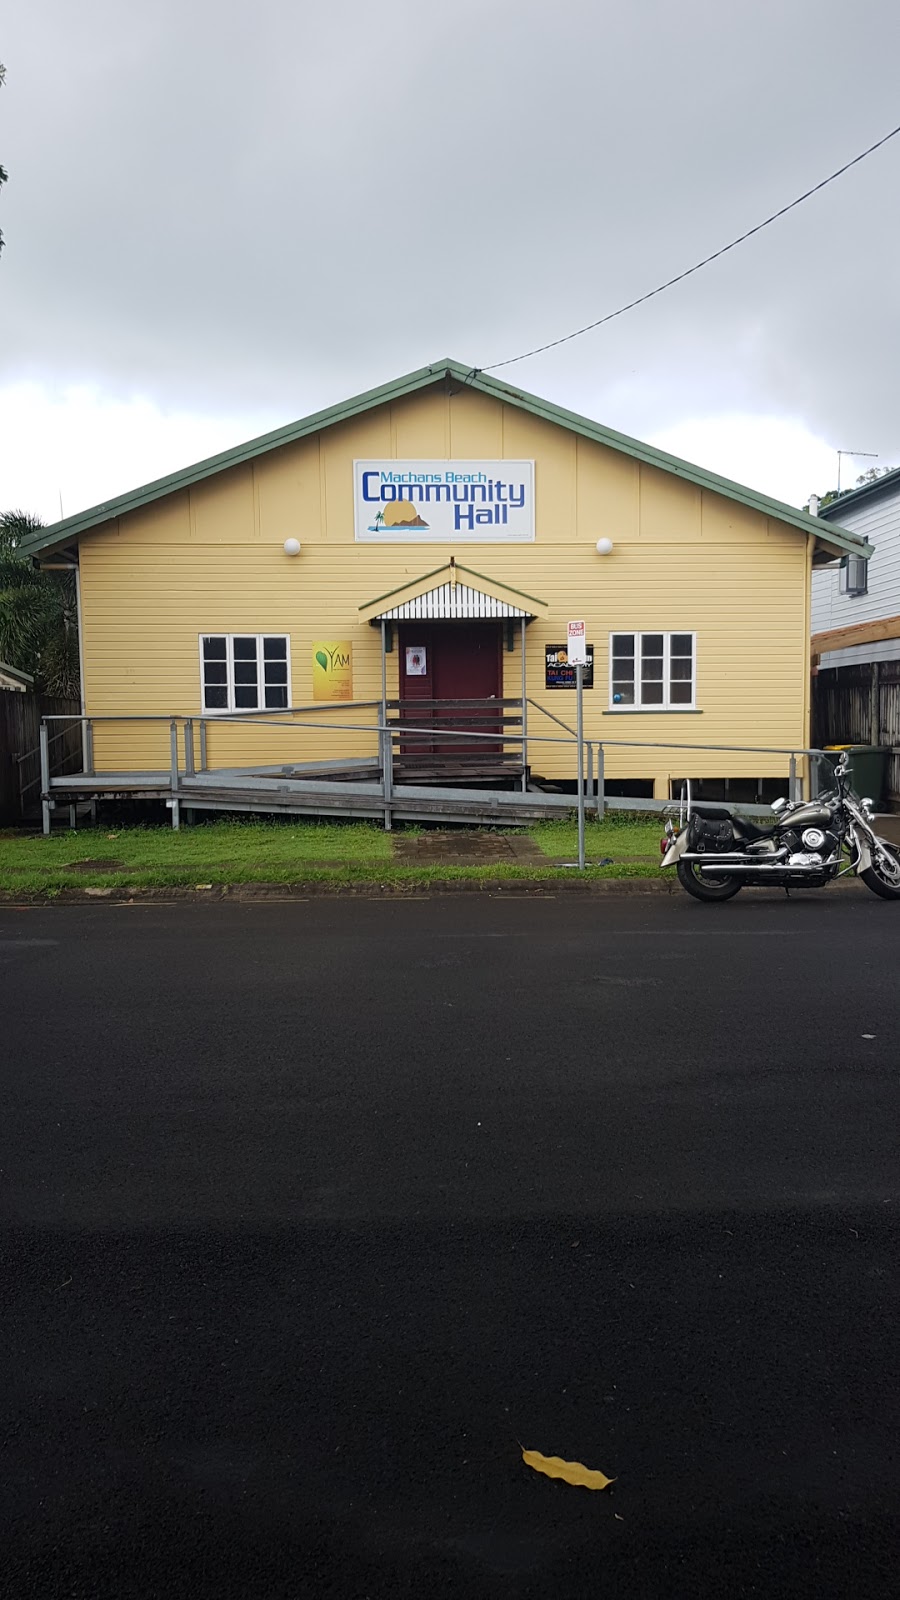 Machans Beach Community Hall | 82 Tucker St, Machans Beach QLD 4878, Australia | Phone: 0431 636 260